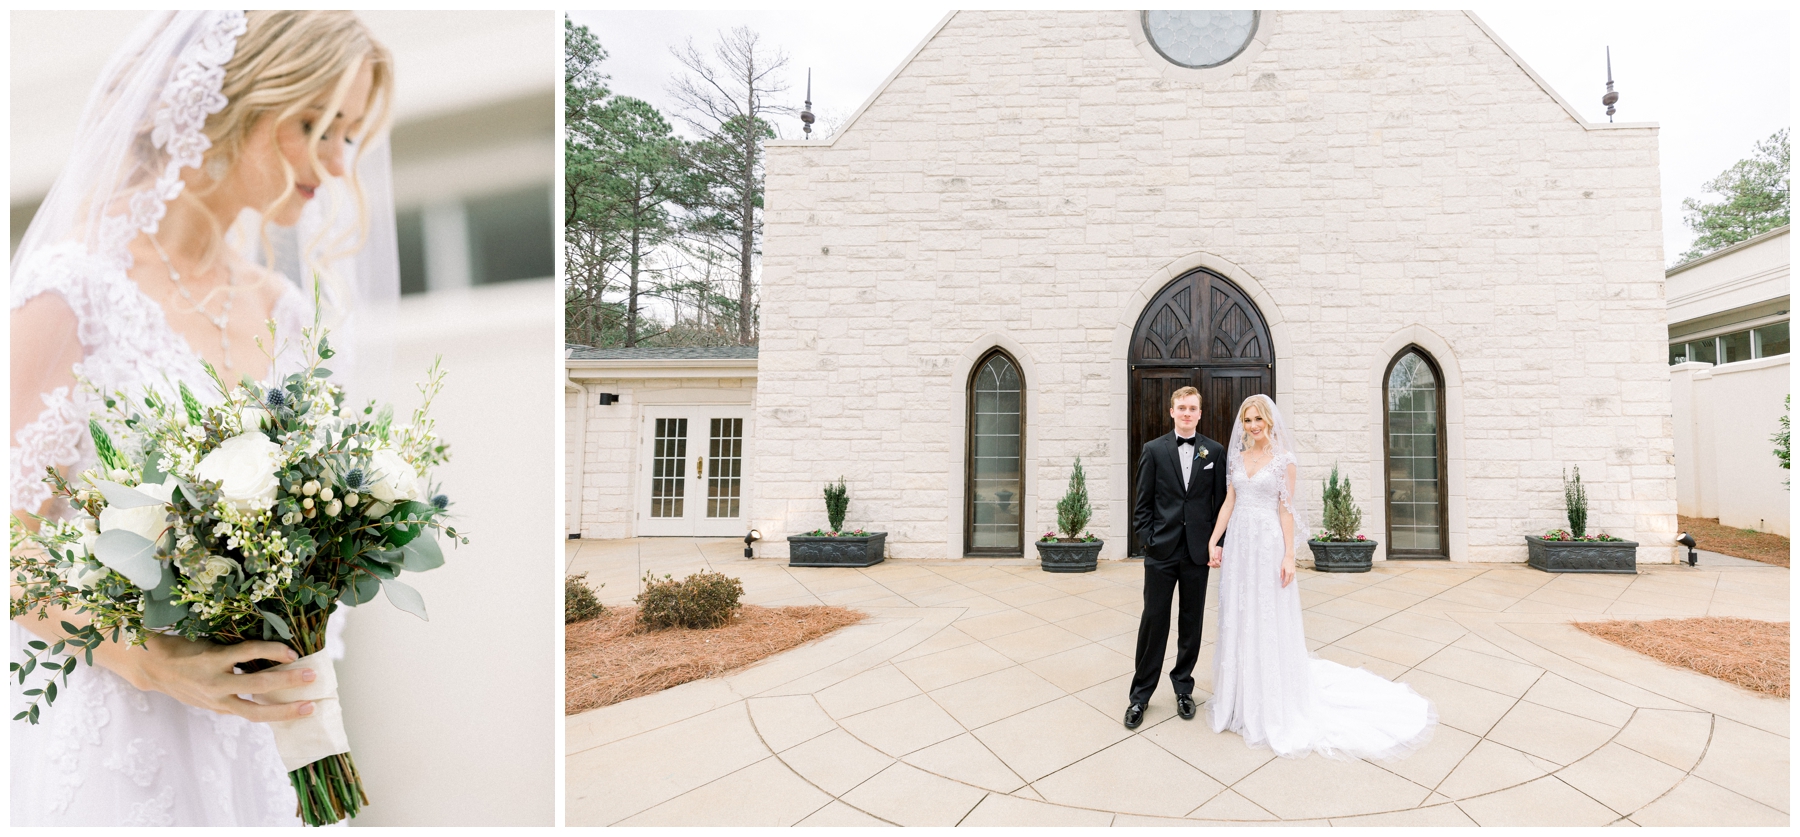 Atlanta_Georgia_Wedding_Photographer_Spring_Blue_Blog_Inspiration_Ashton Gardens Venue_Bride and Groom_Sunset Portraits